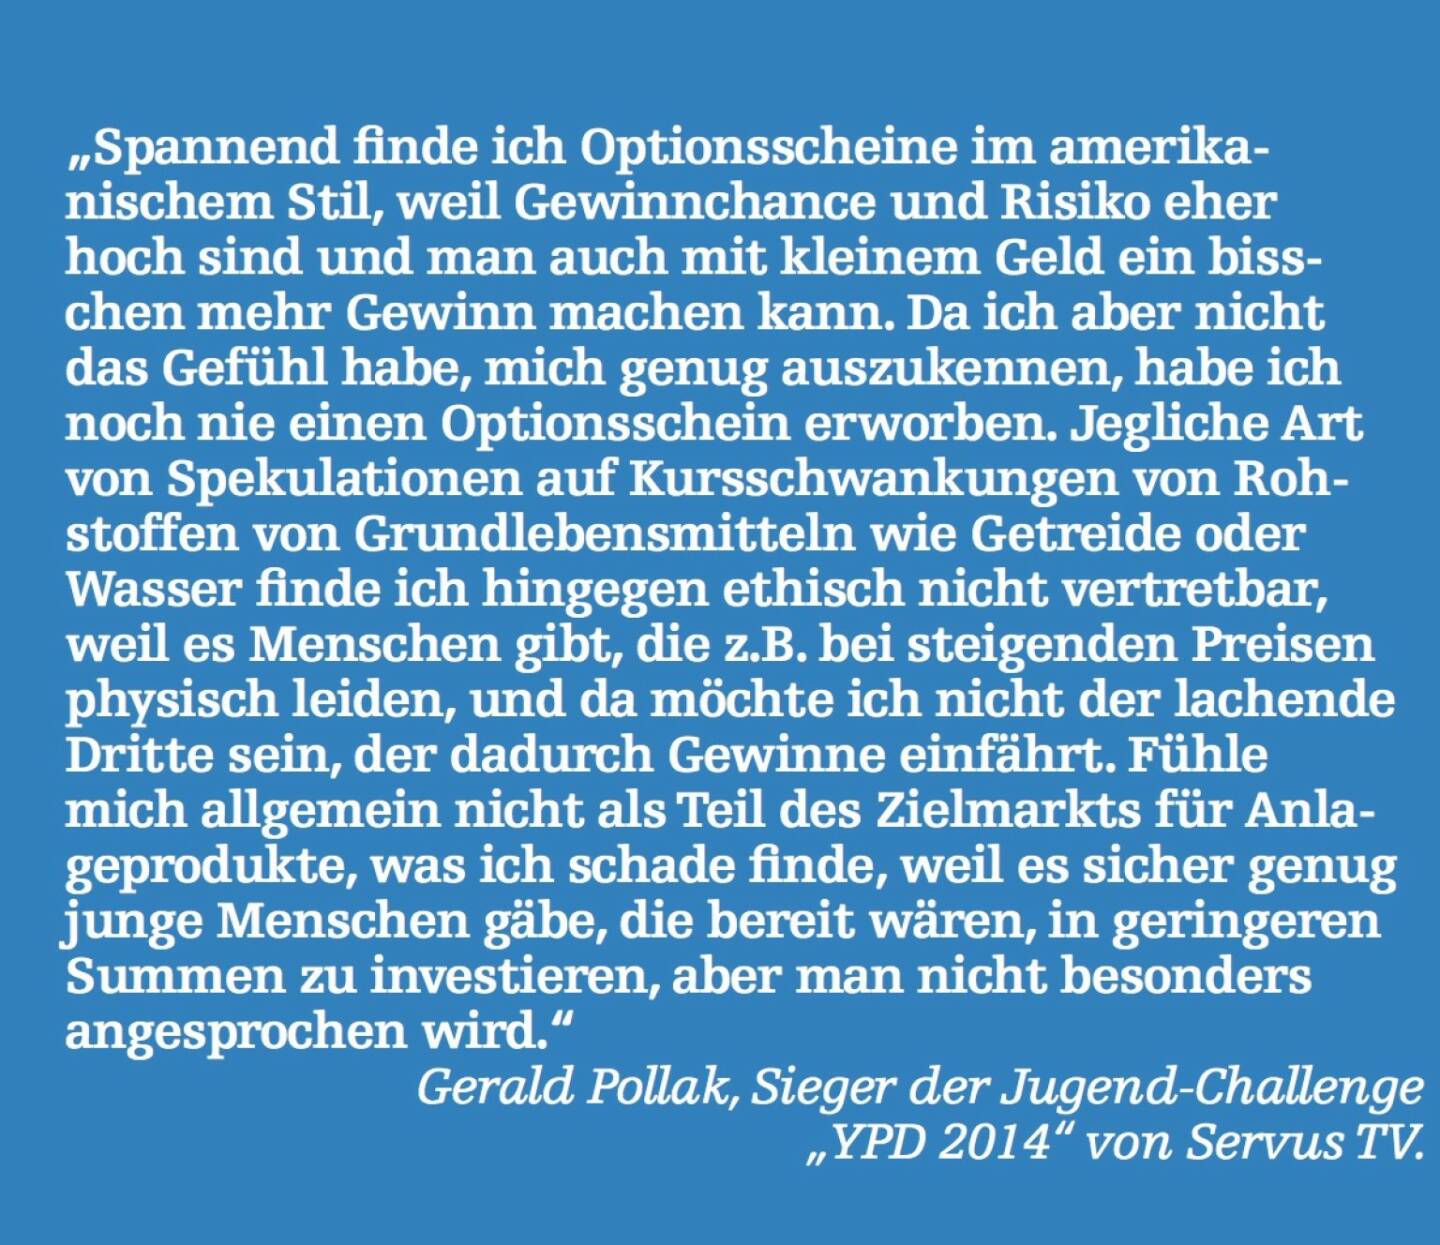 Gerald Pollak, Sieger der Jugend-Challenge „YPD 2014“ von Servus TV.